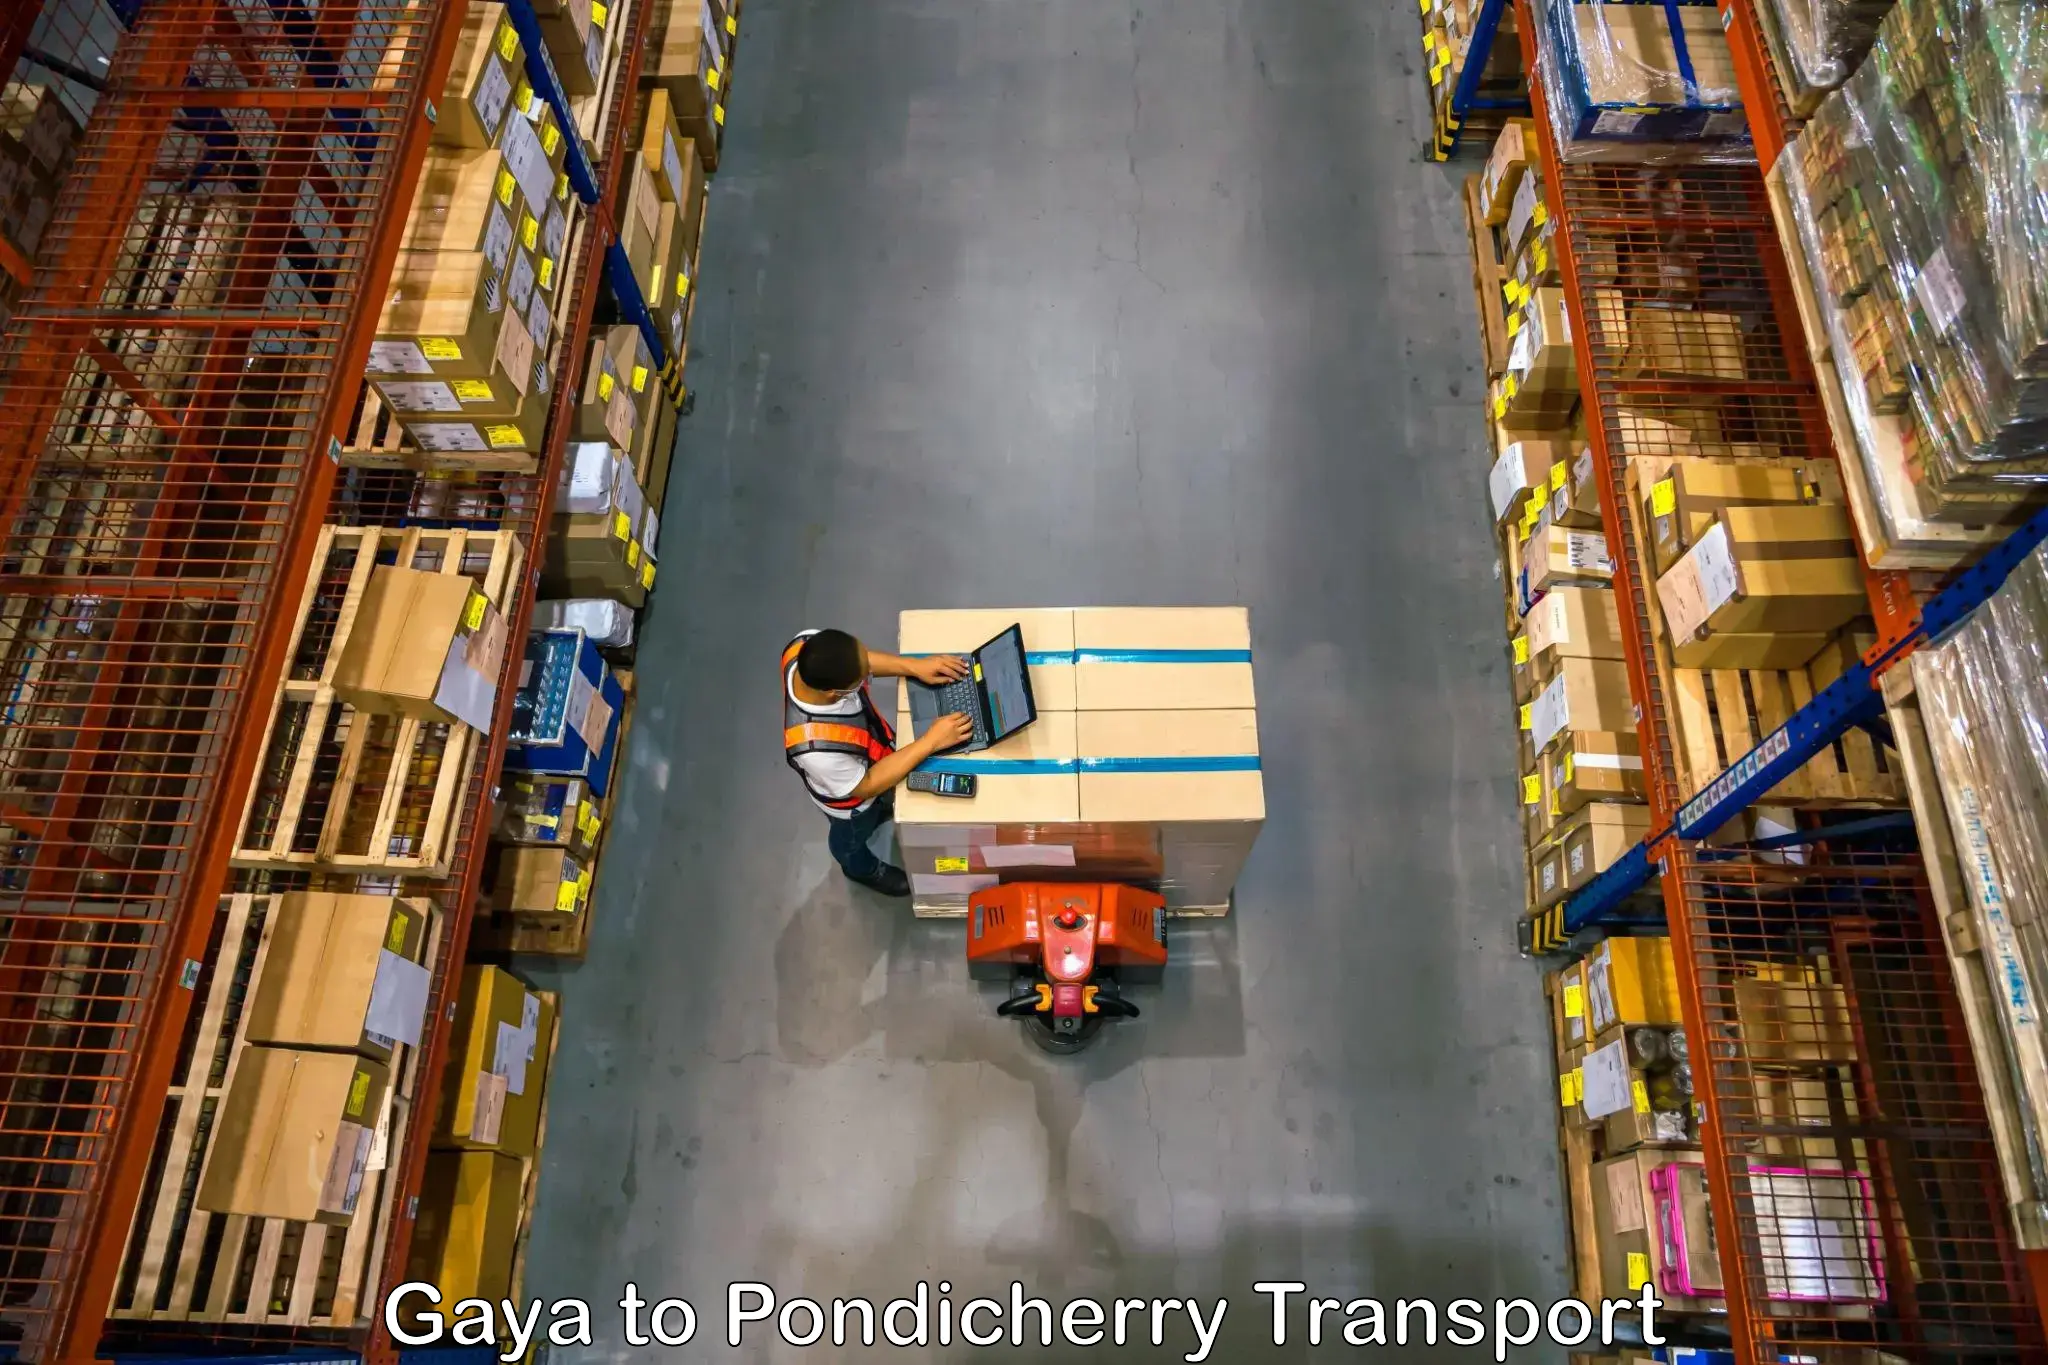 Delivery service Gaya to Pondicherry University